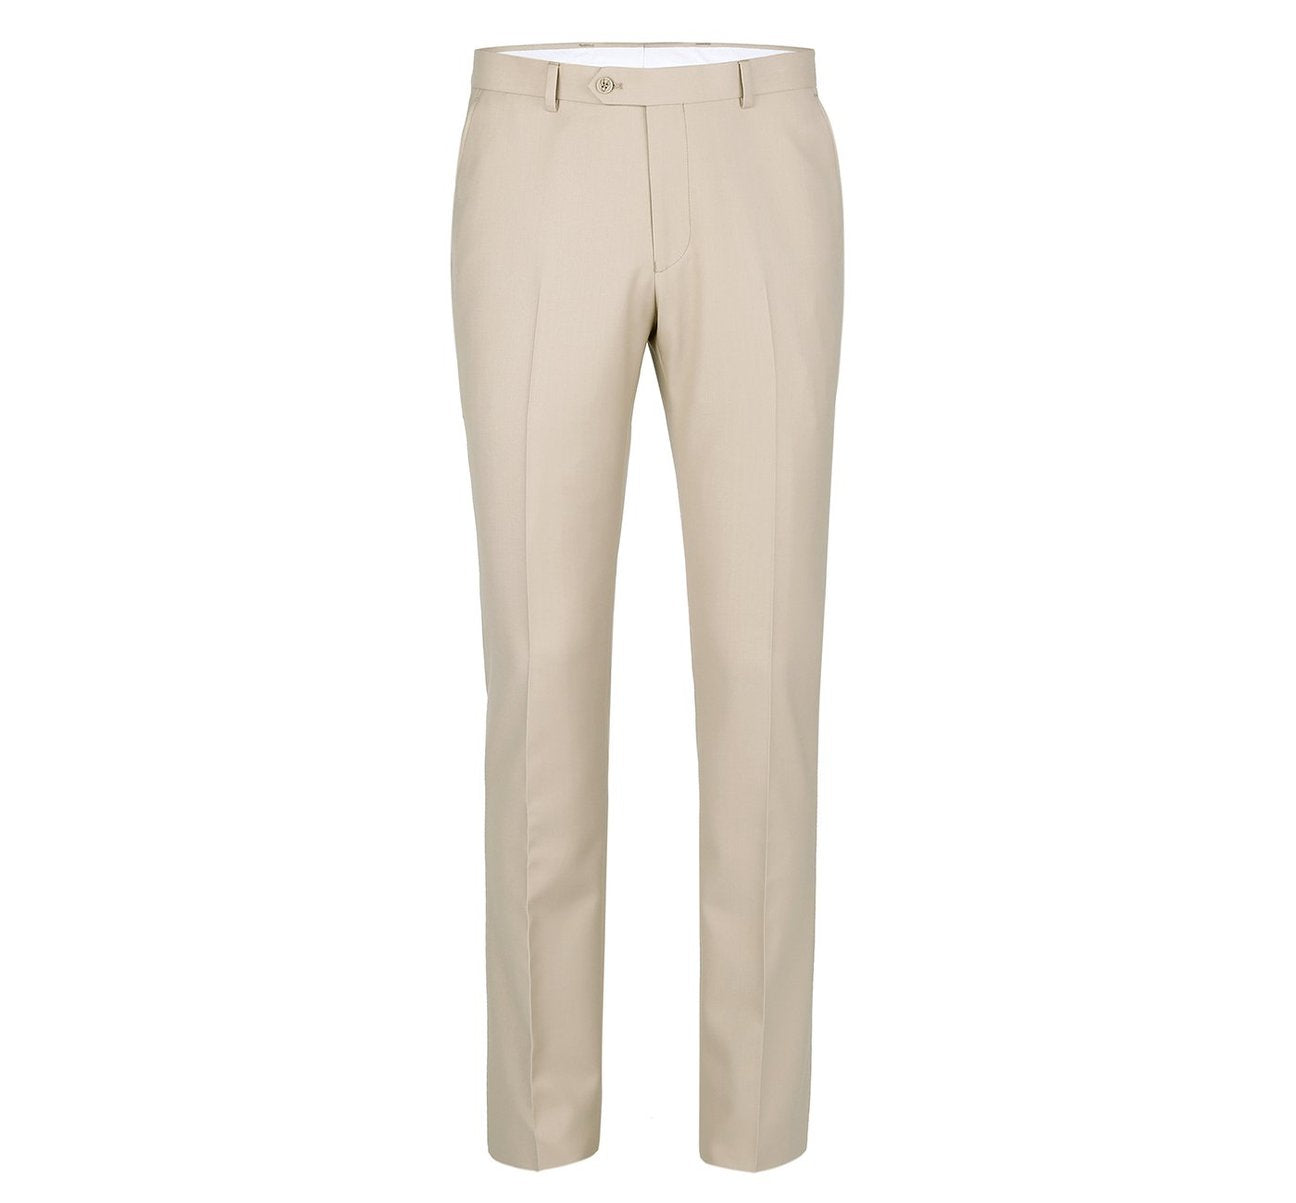 RENOIR Beige Slim Fit Flat Front Suit Separate Pants 201-3